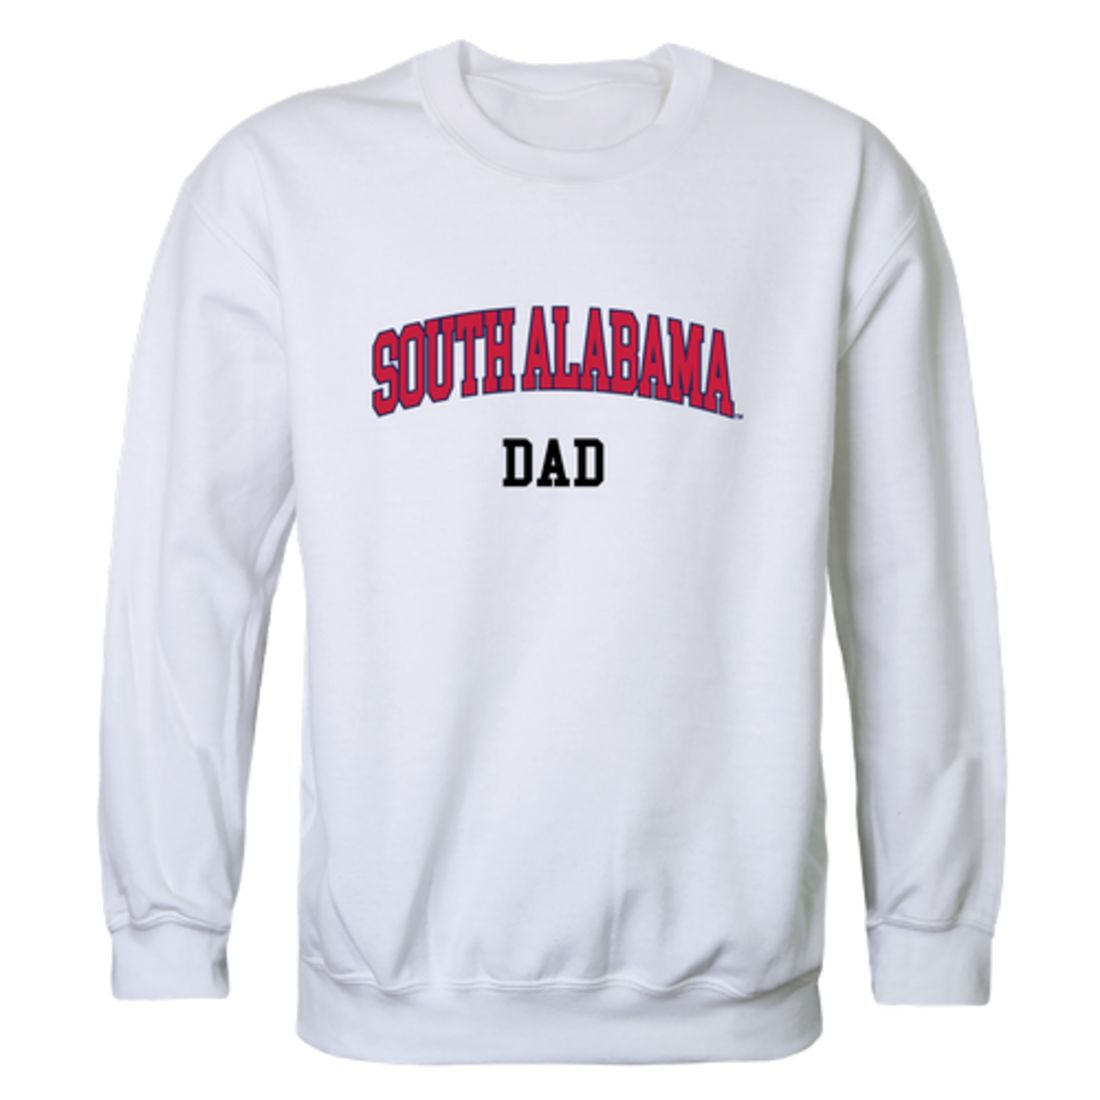 University of South Alabama Jaguars Dad Fleece Crewneck Pullover Sweatshirt Heather Grey-Campus-Wardrobe